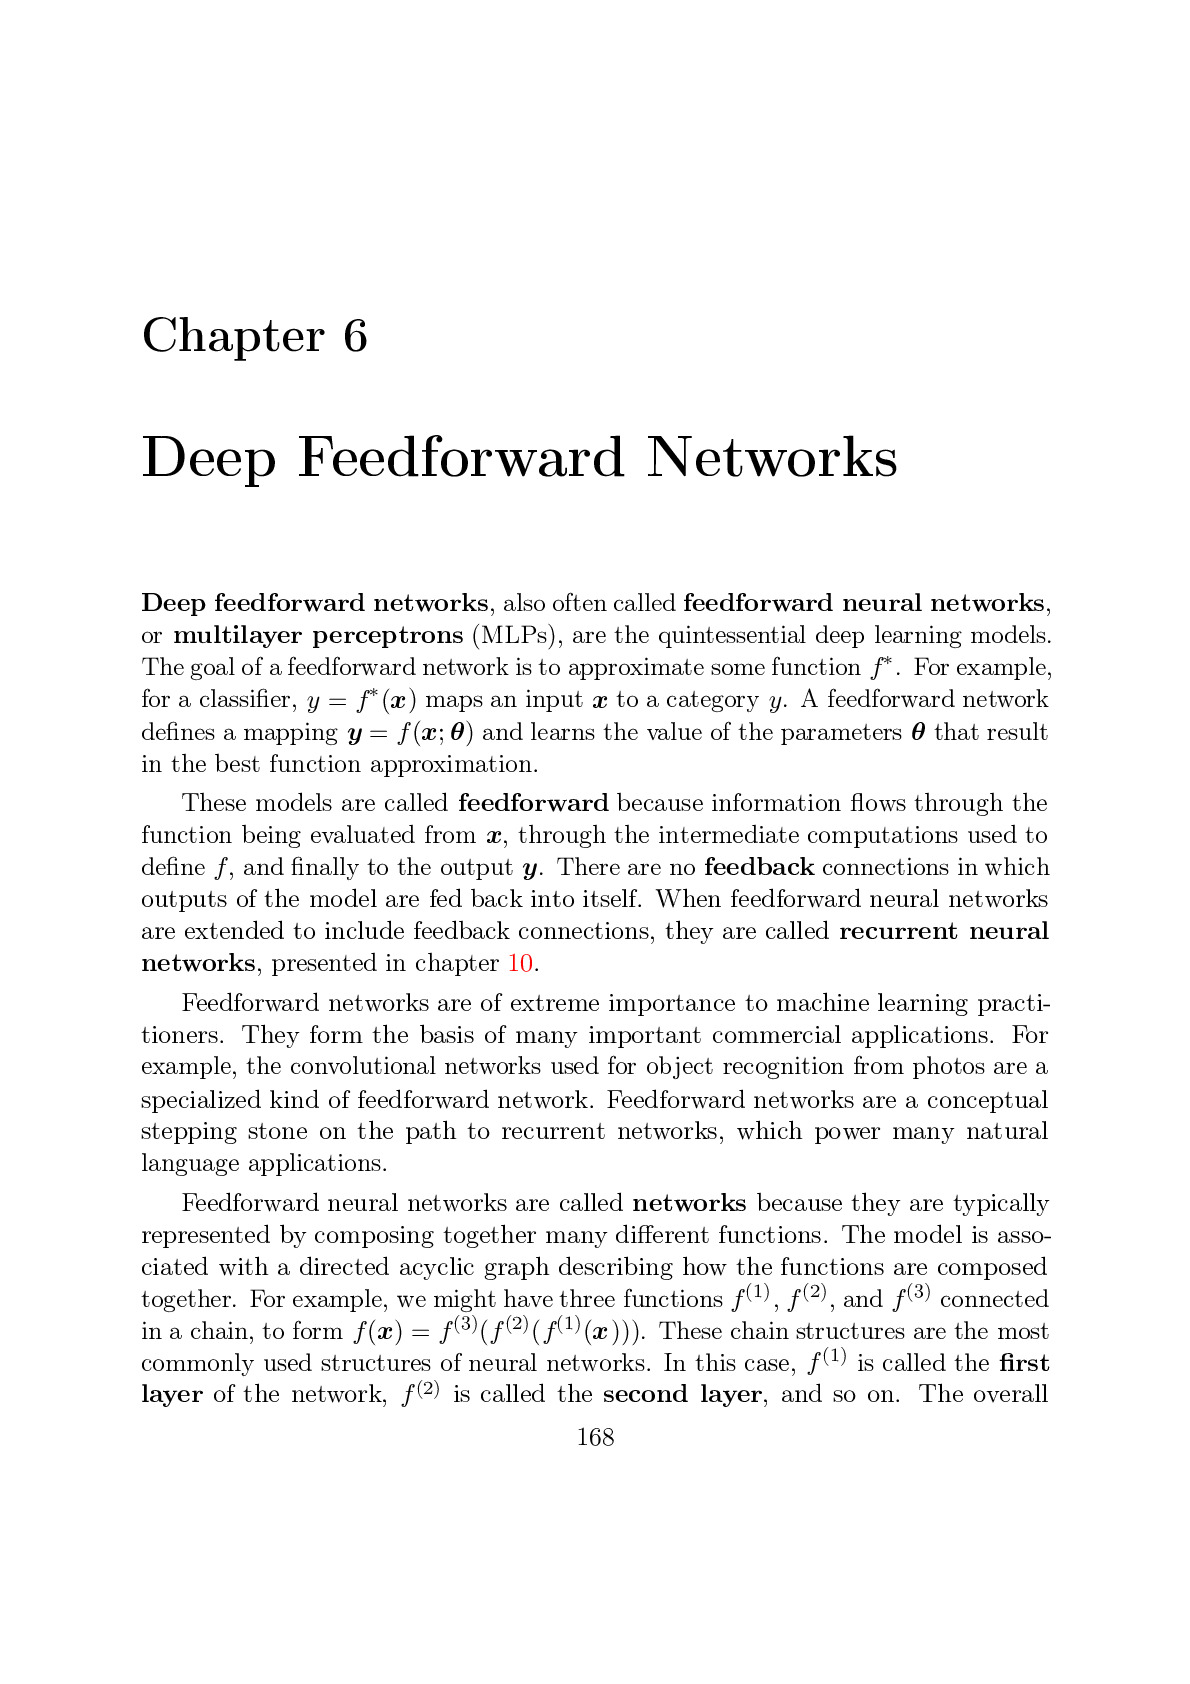 6 Deep Feedforward Networks